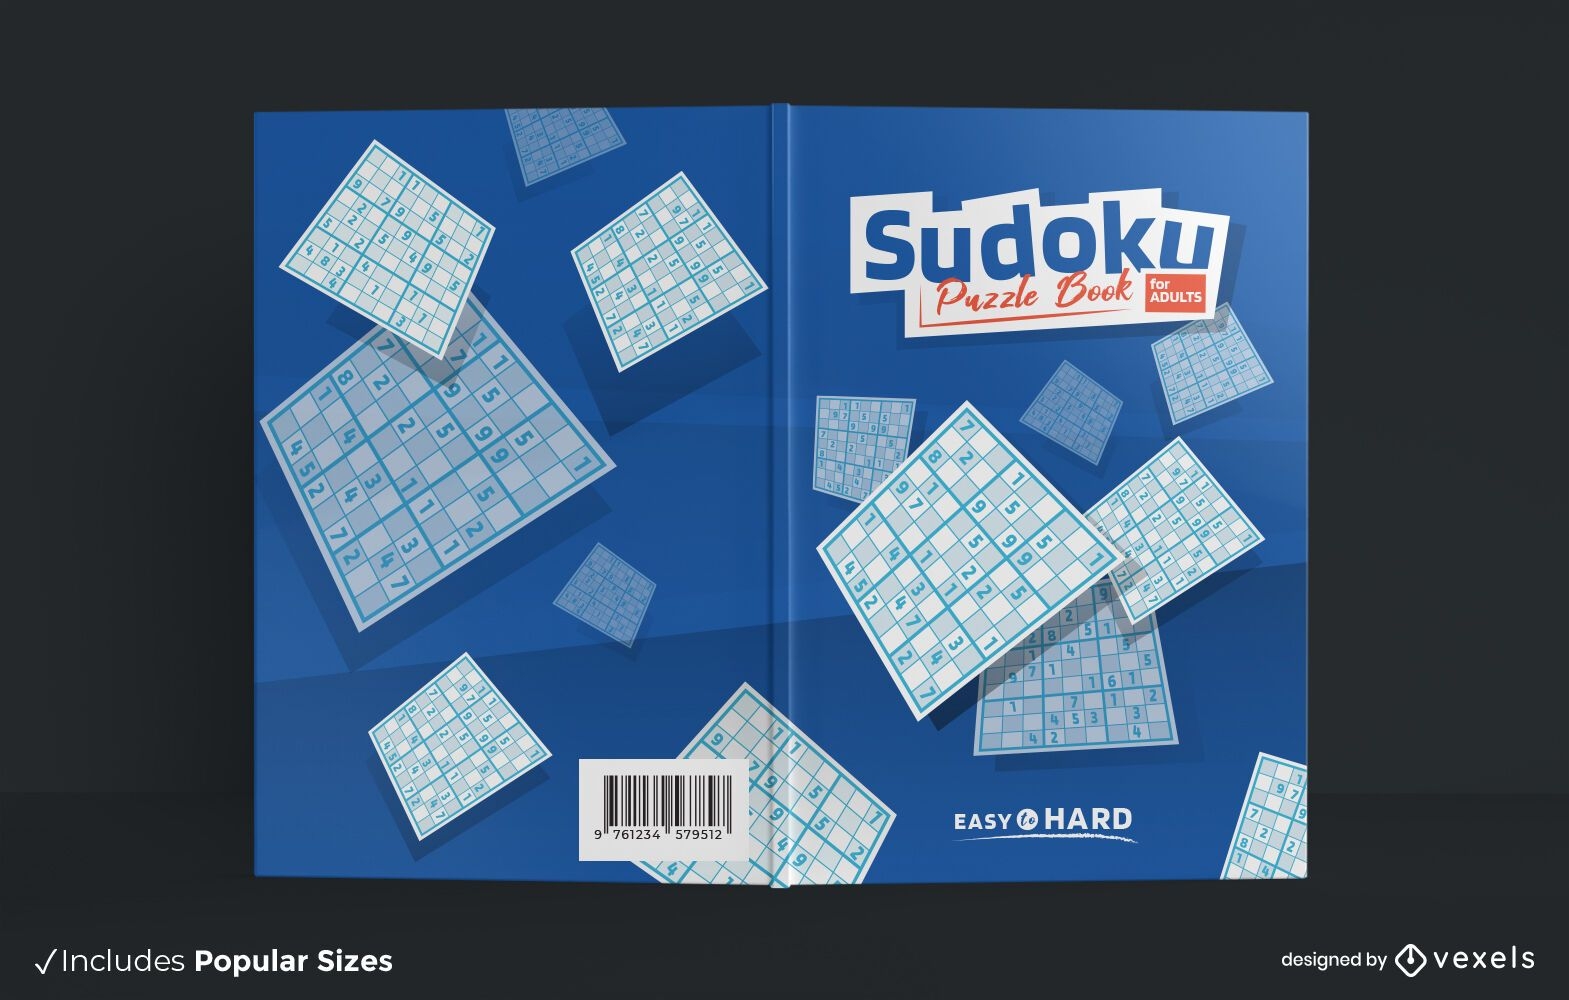 Sudoku puzzle adultos dise?o de portada de libros